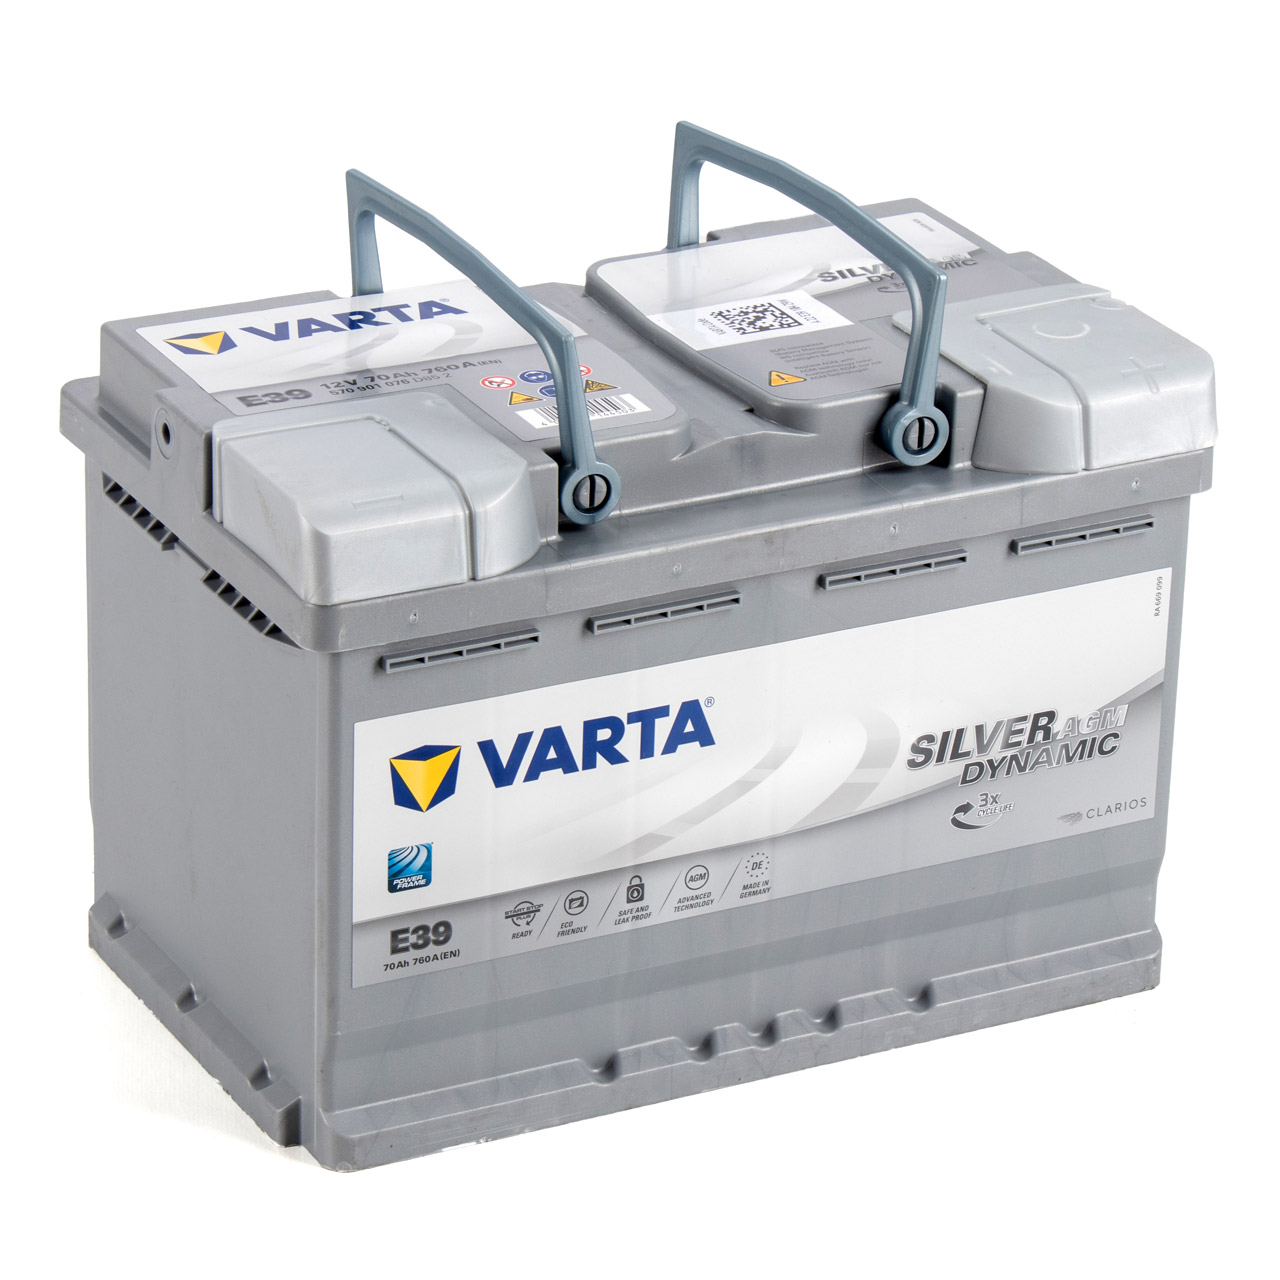 VARTA Starterbatterien / Autobatterien - 570901076D852 - ws